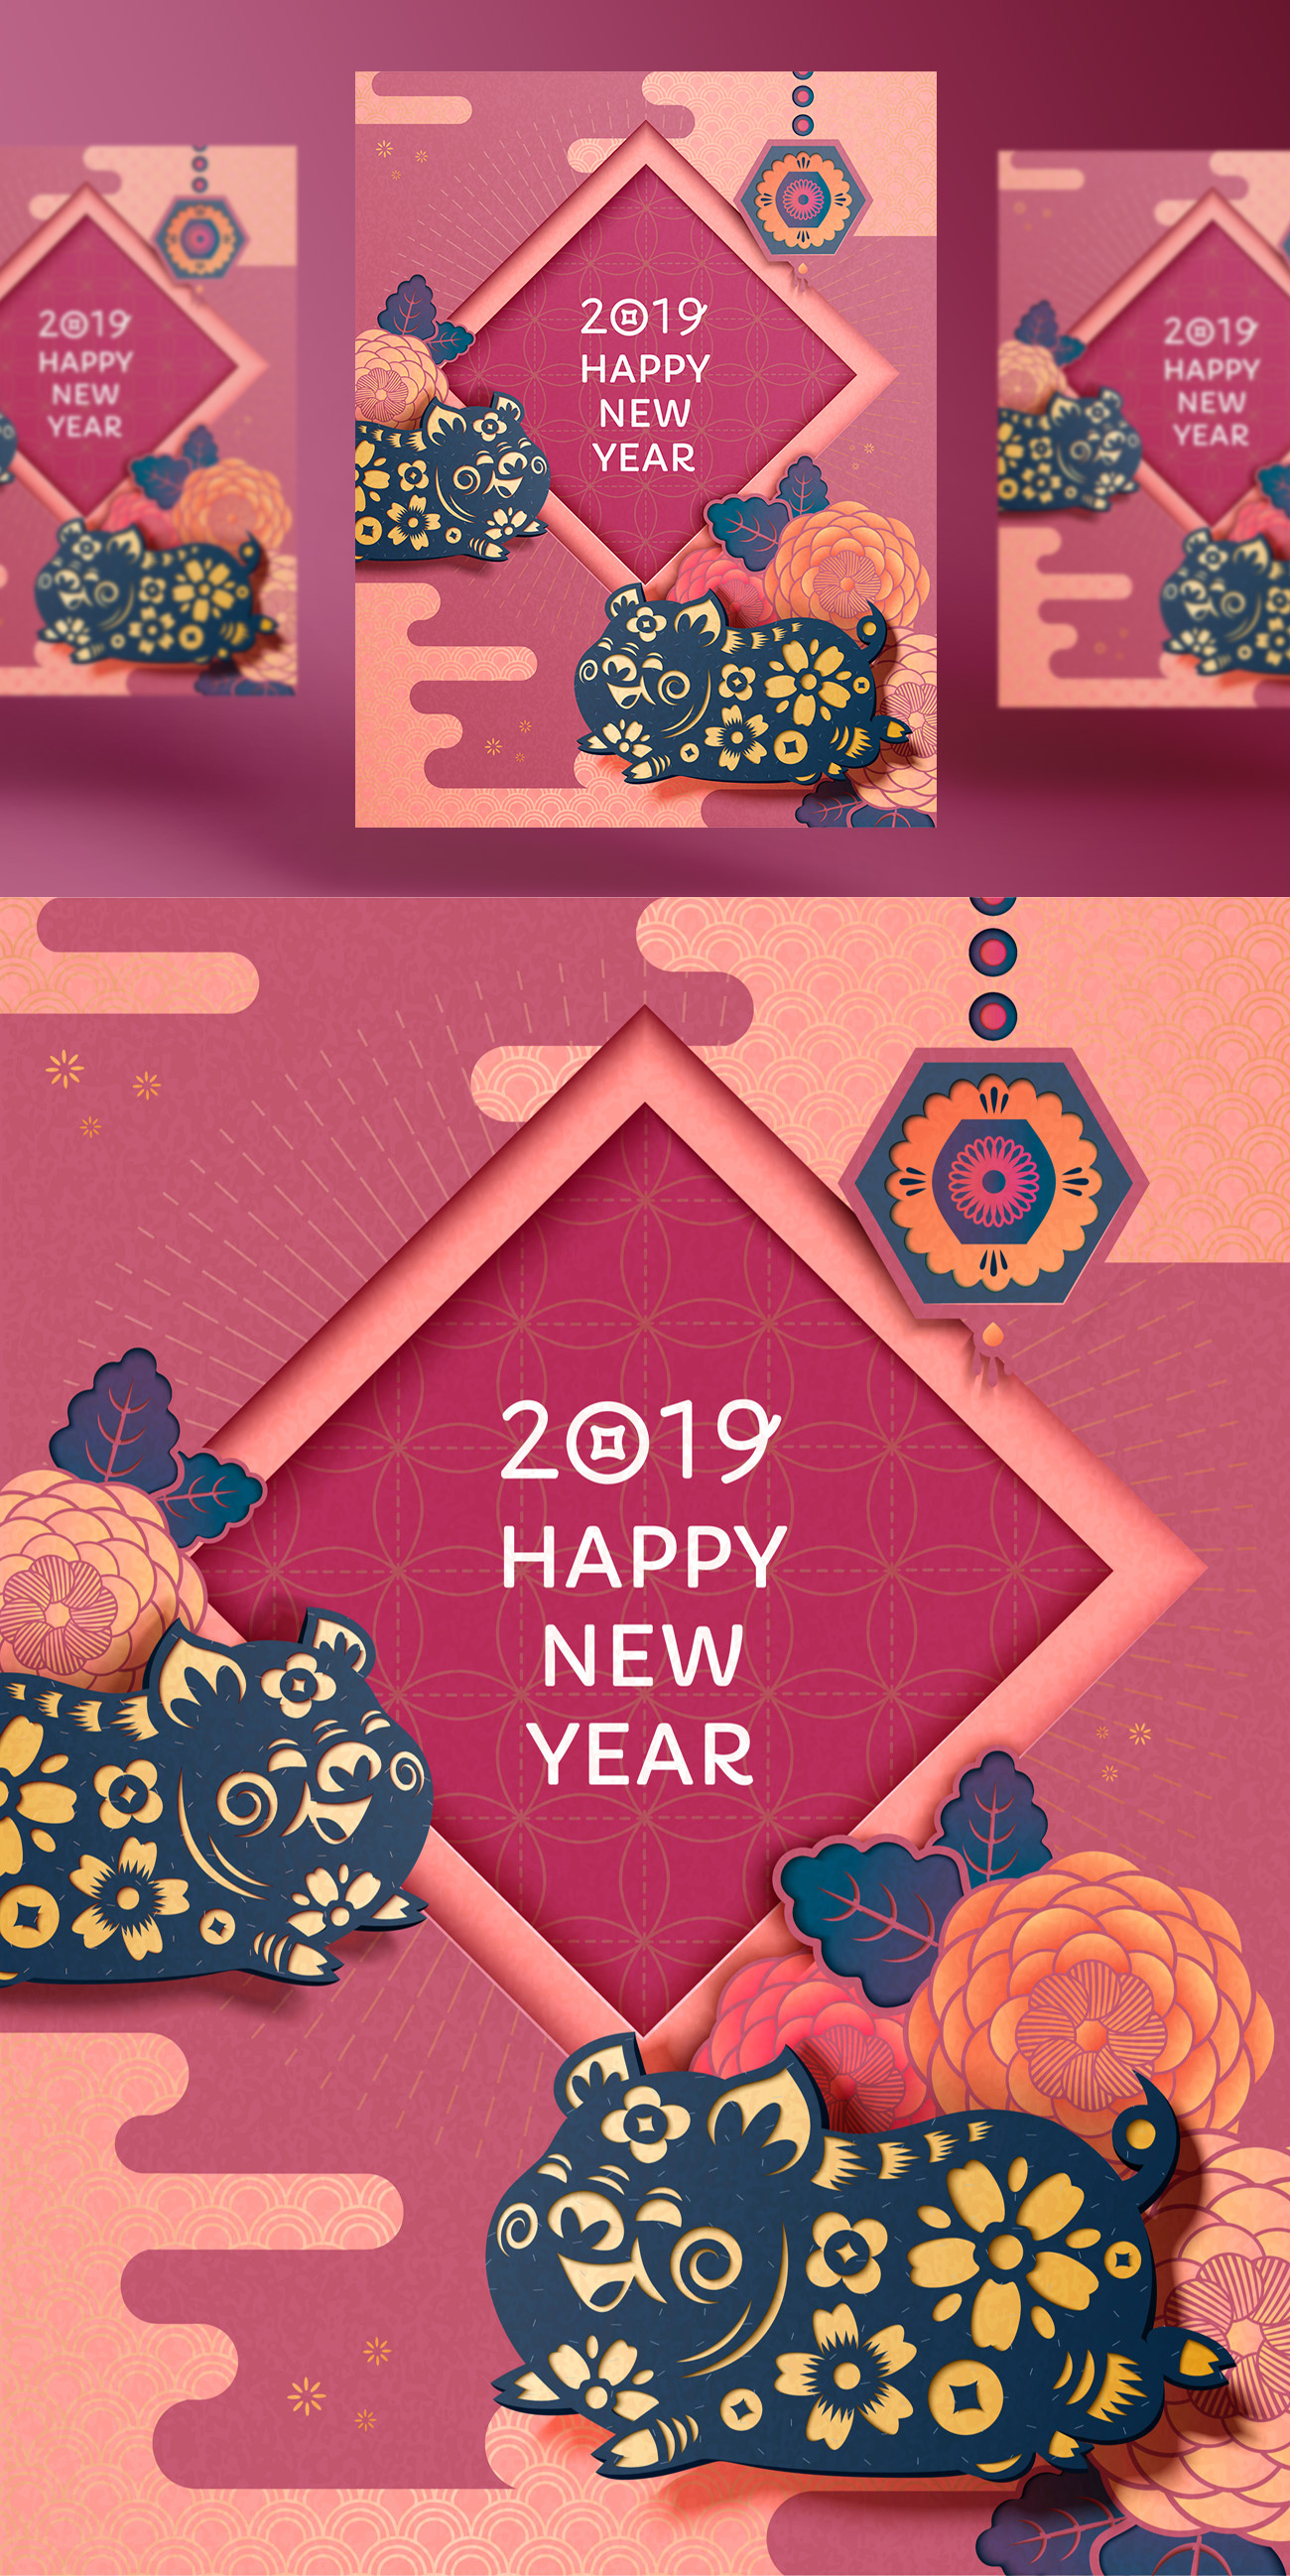 2019年纸艺术风格的中国传统彩绘牡丹图案的新年快乐年画矢量